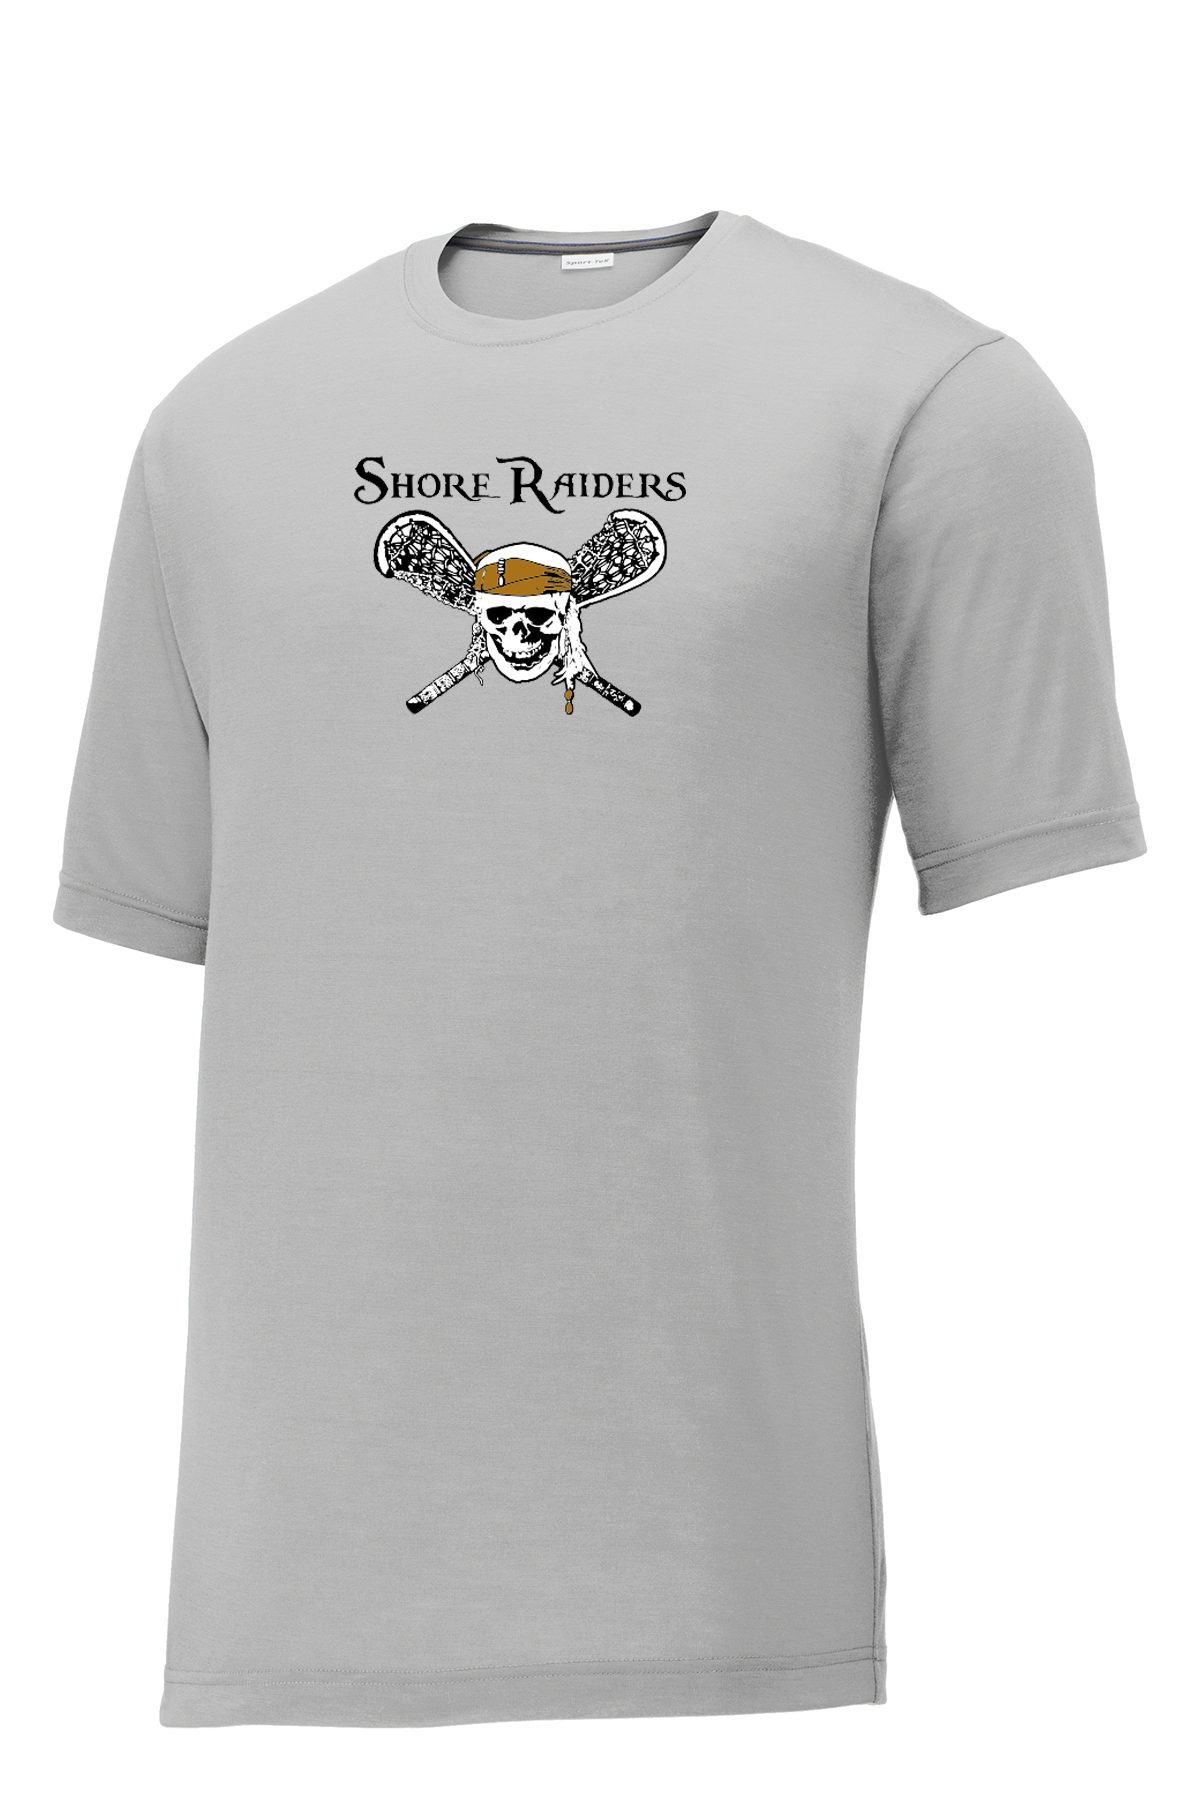 Shore Raiders Lacrosse CottonTouch Performance T-Shirt